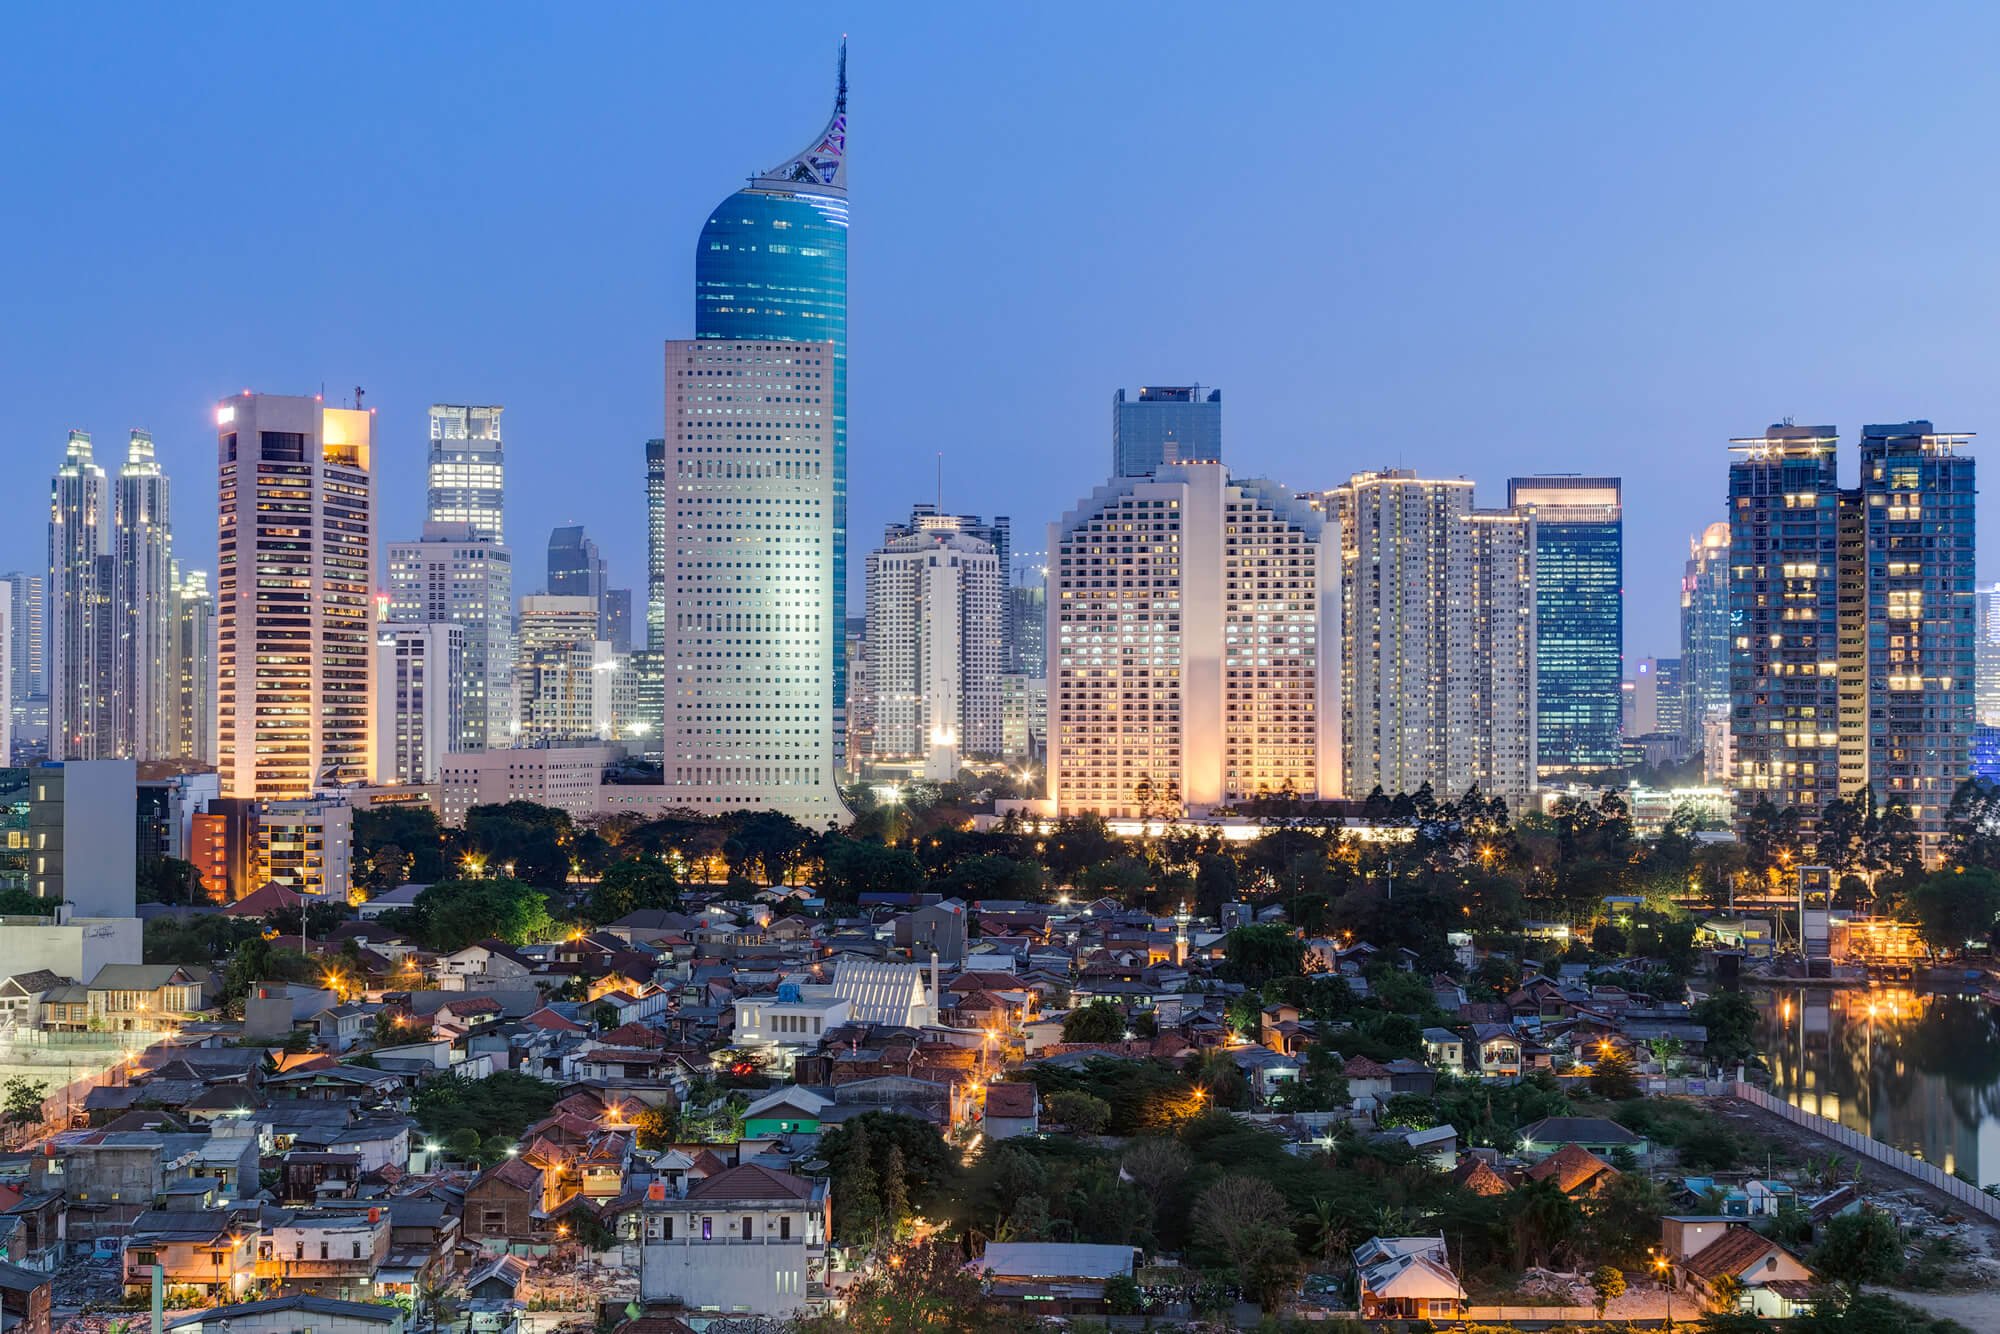 Jakarta downtown skyline